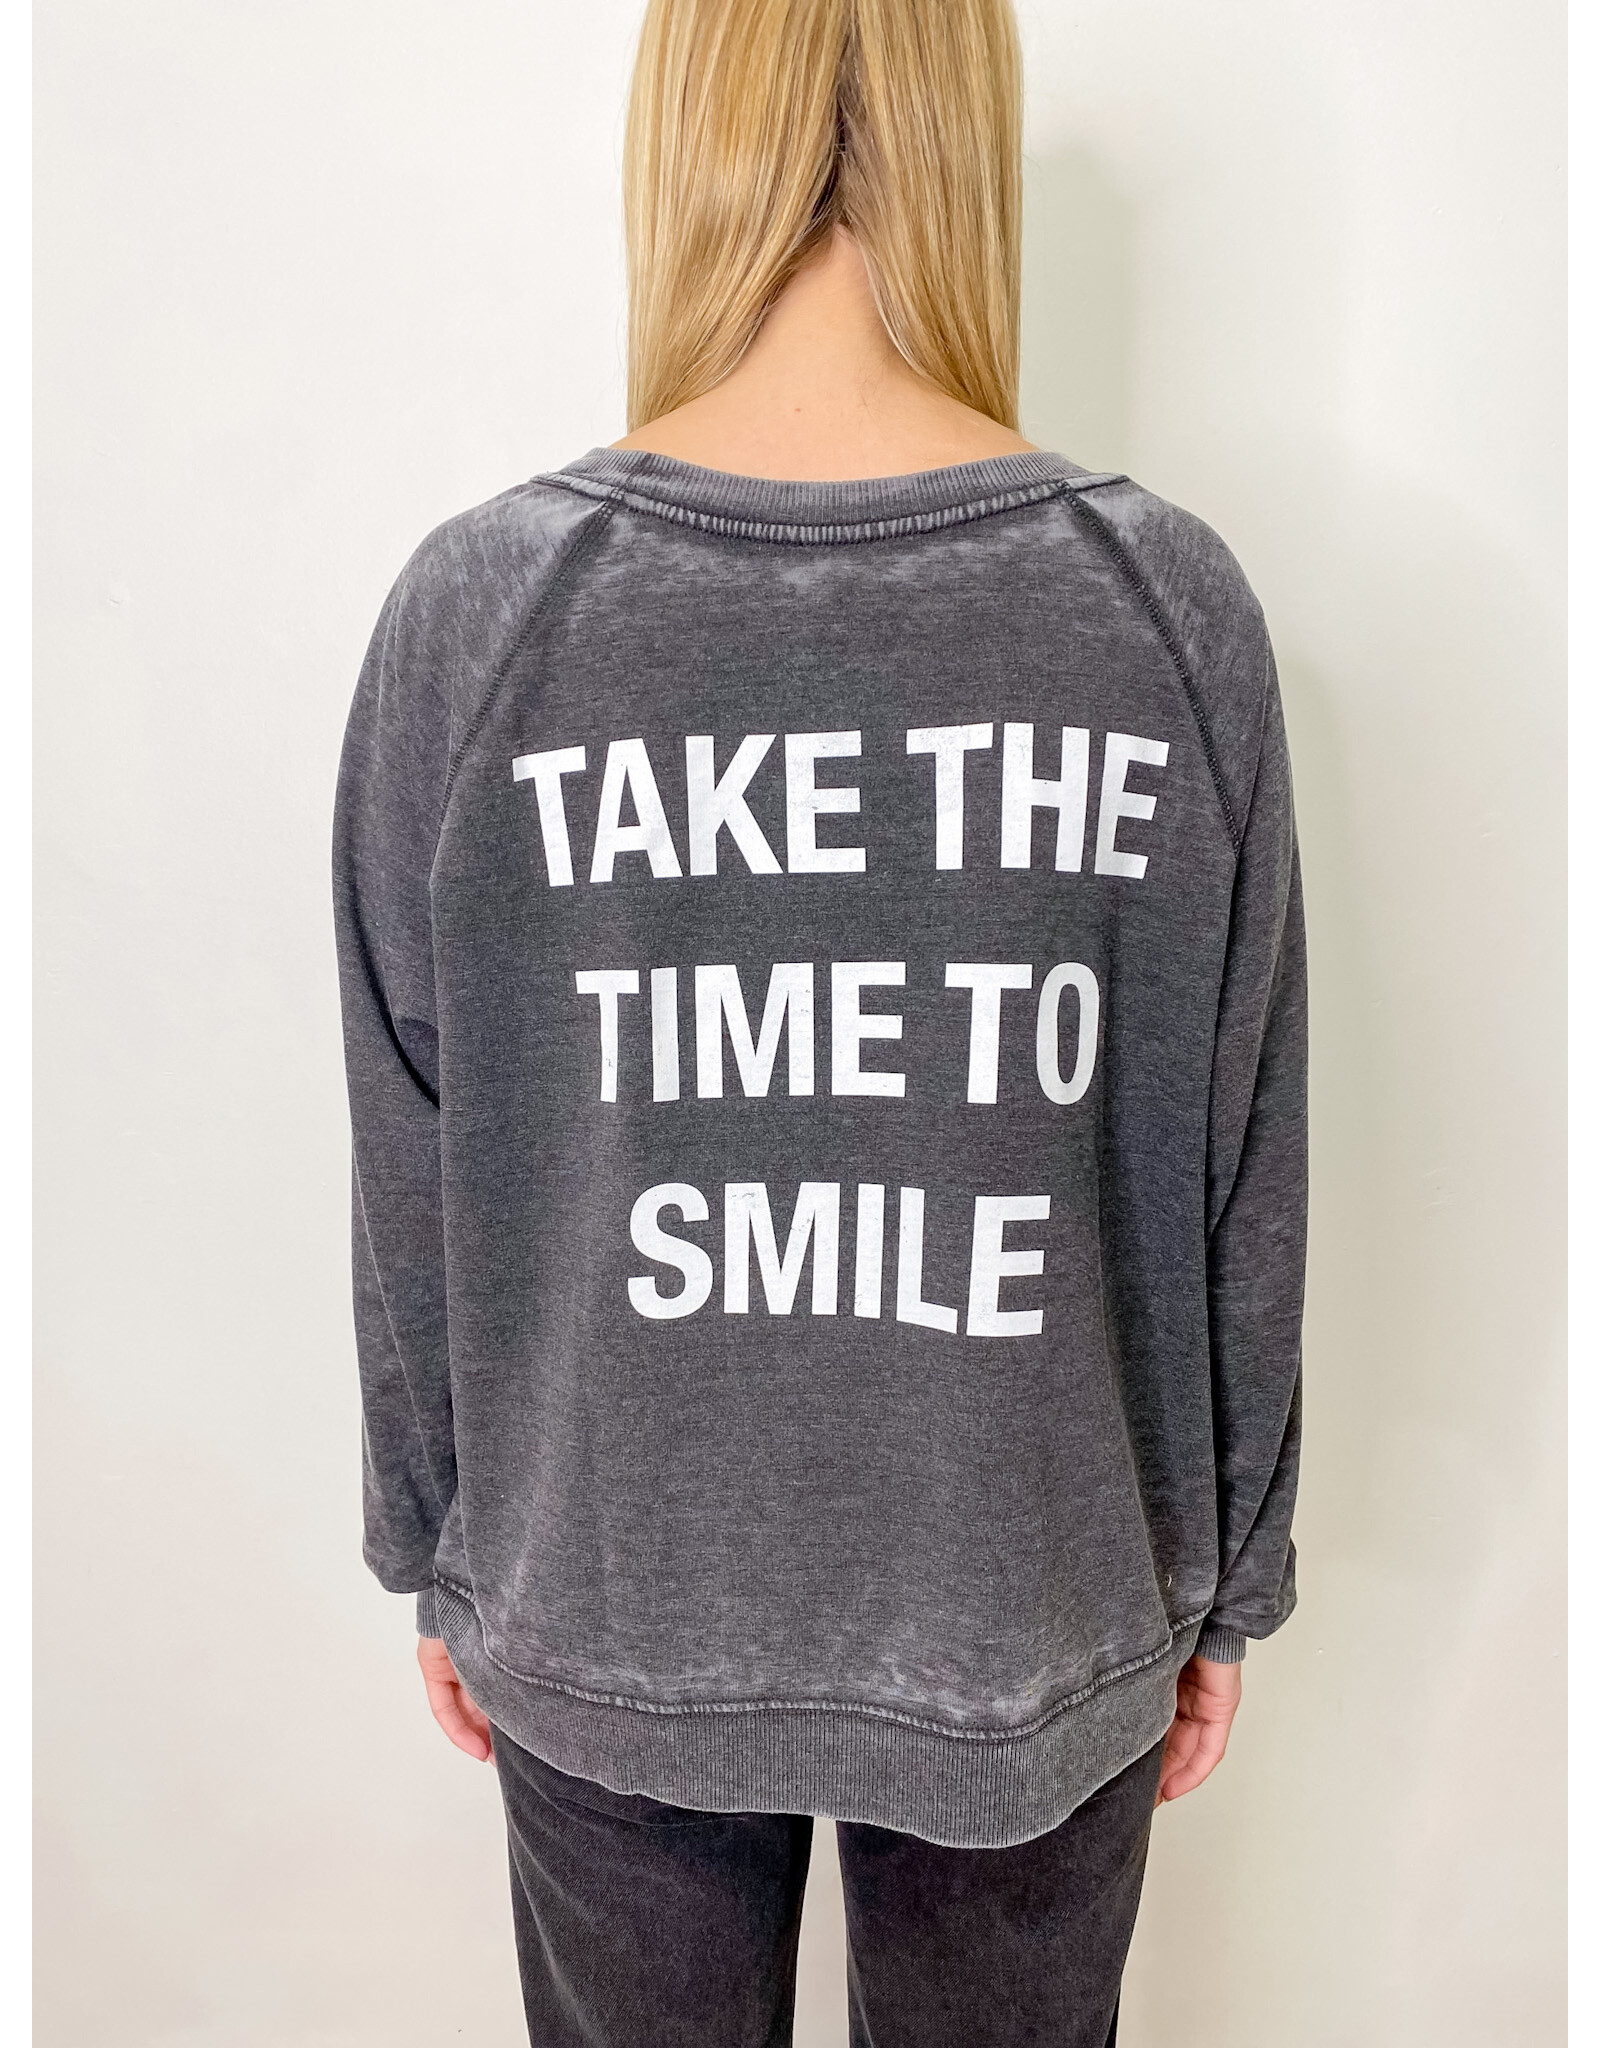 Black Smiley Face Burnout Sweatshirt